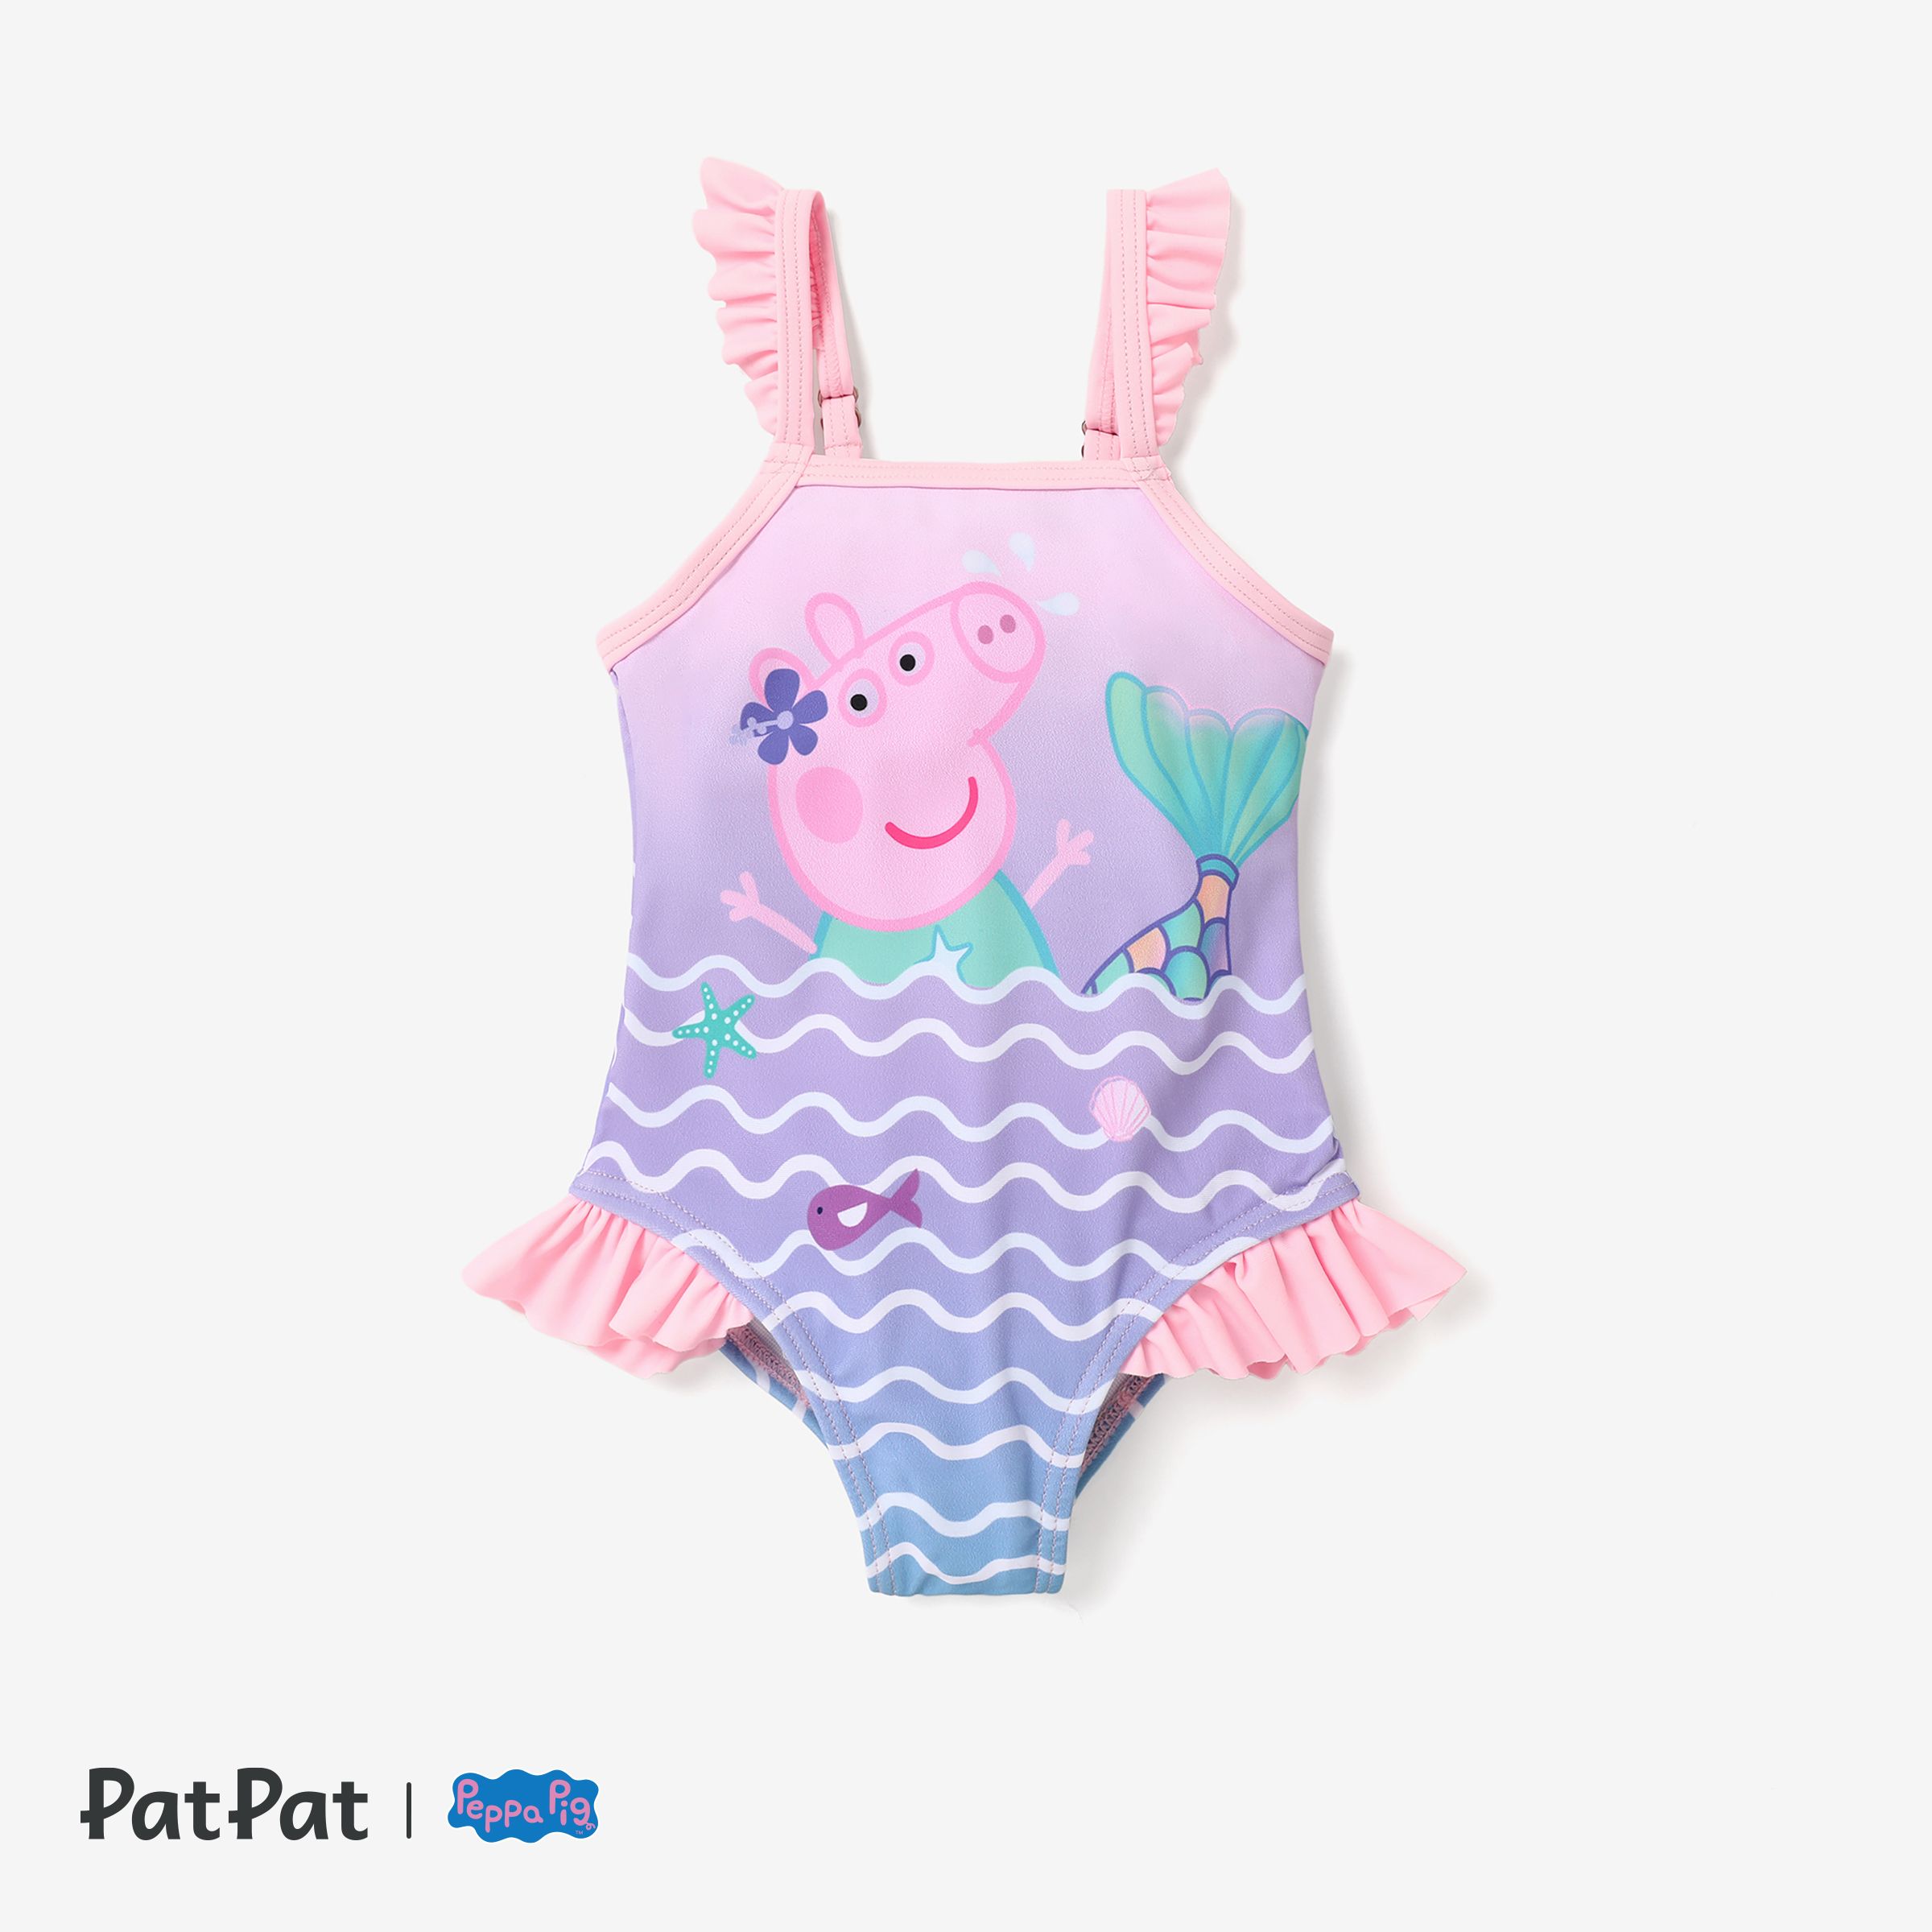 Peppa Pig Baby/Toddler Girl Ocean Mermaid Swimsuit